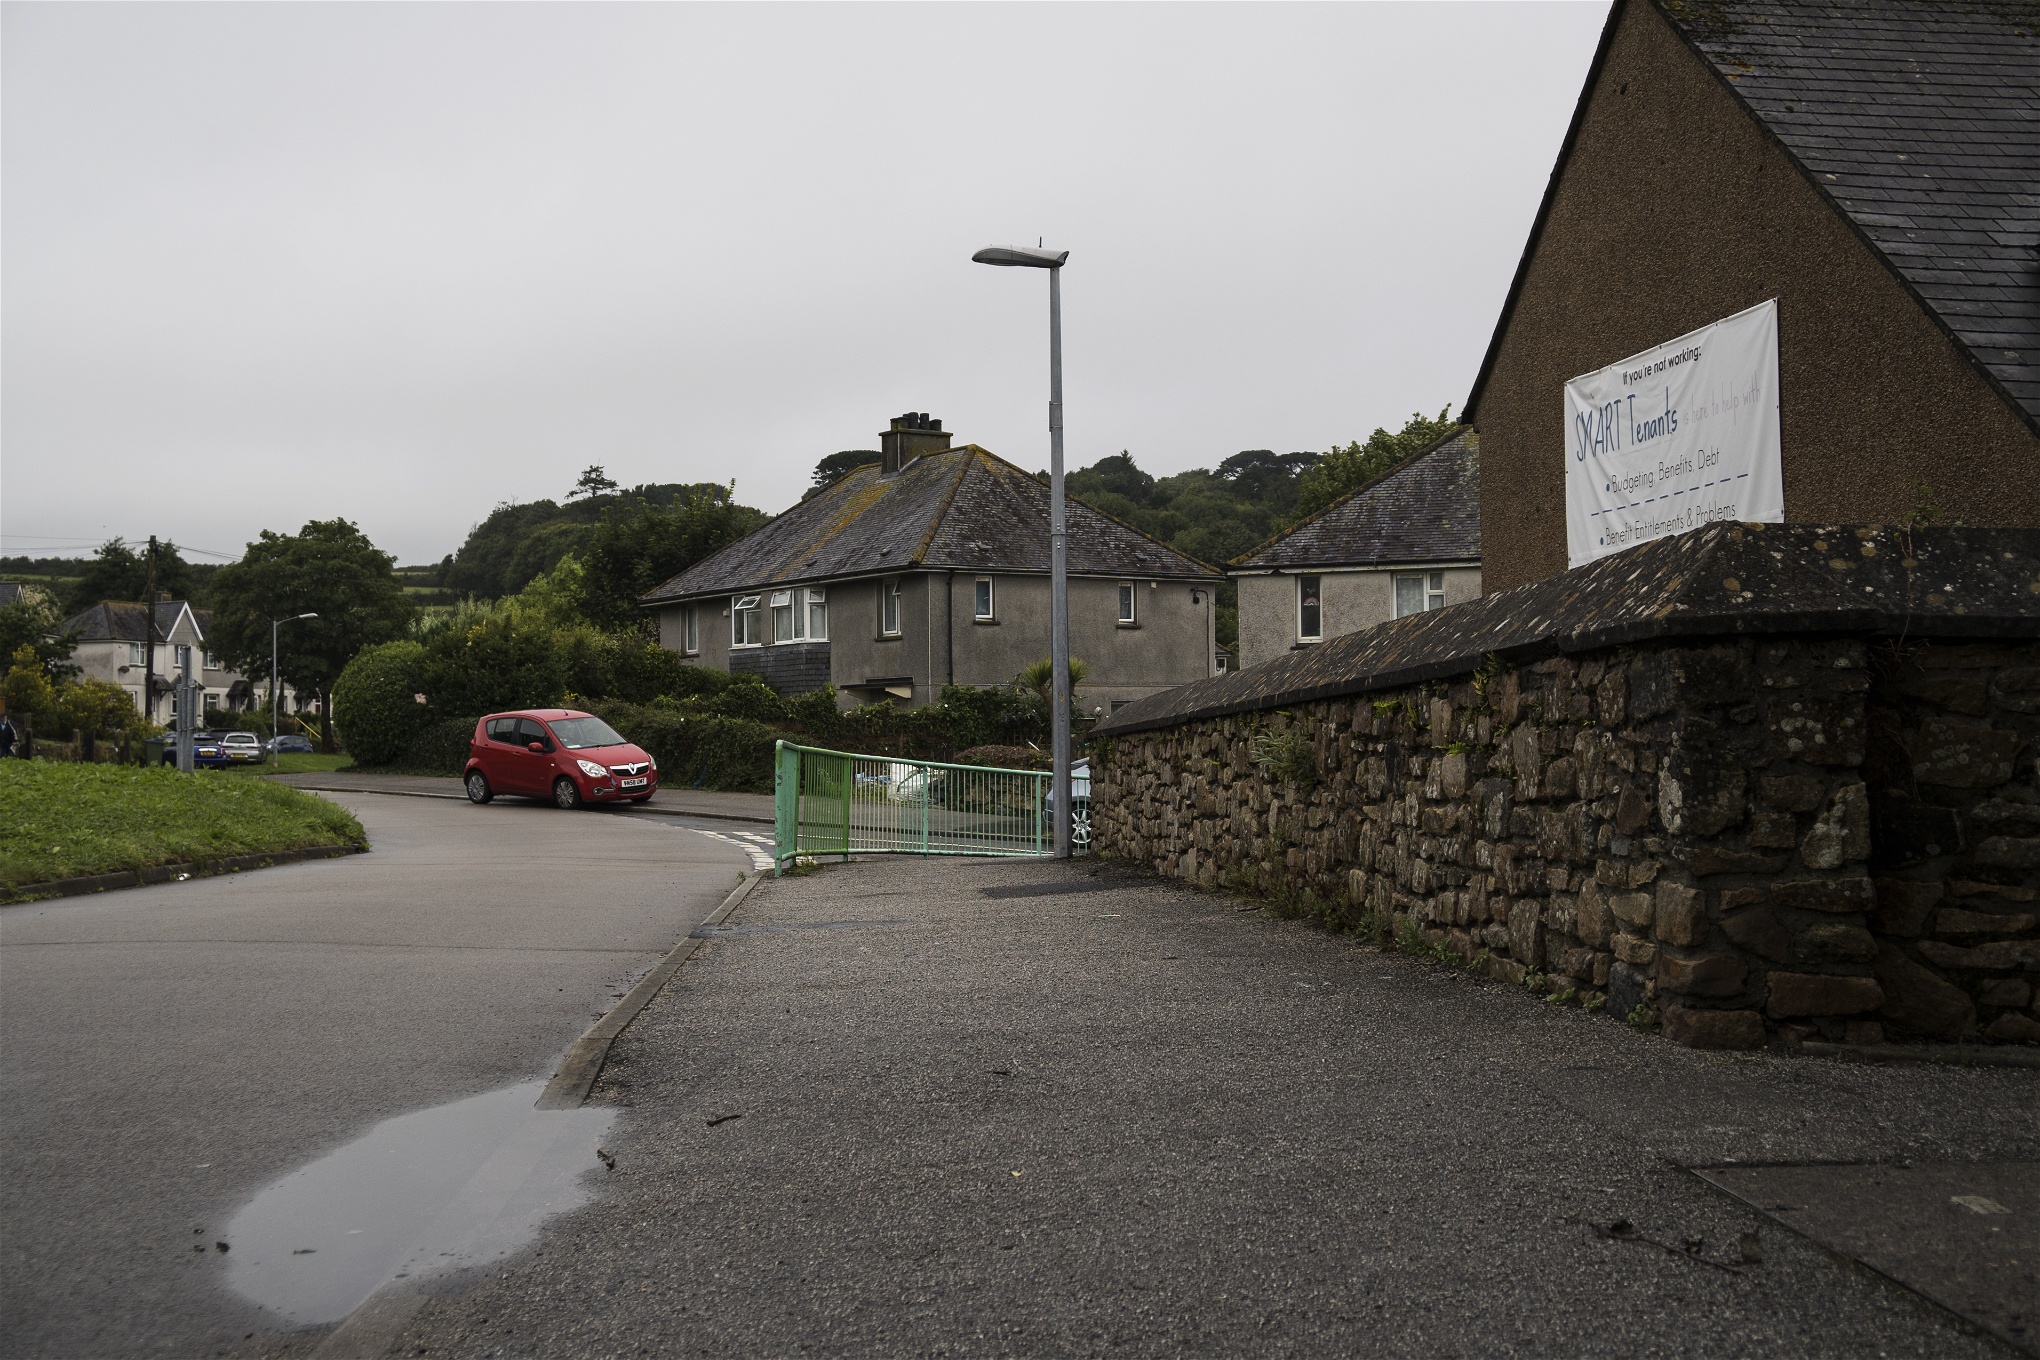 Foto: Maria Lundin OsvaldsTreneere är ett av de mest socioekonomiskt utsatta områdena i Cornwall.